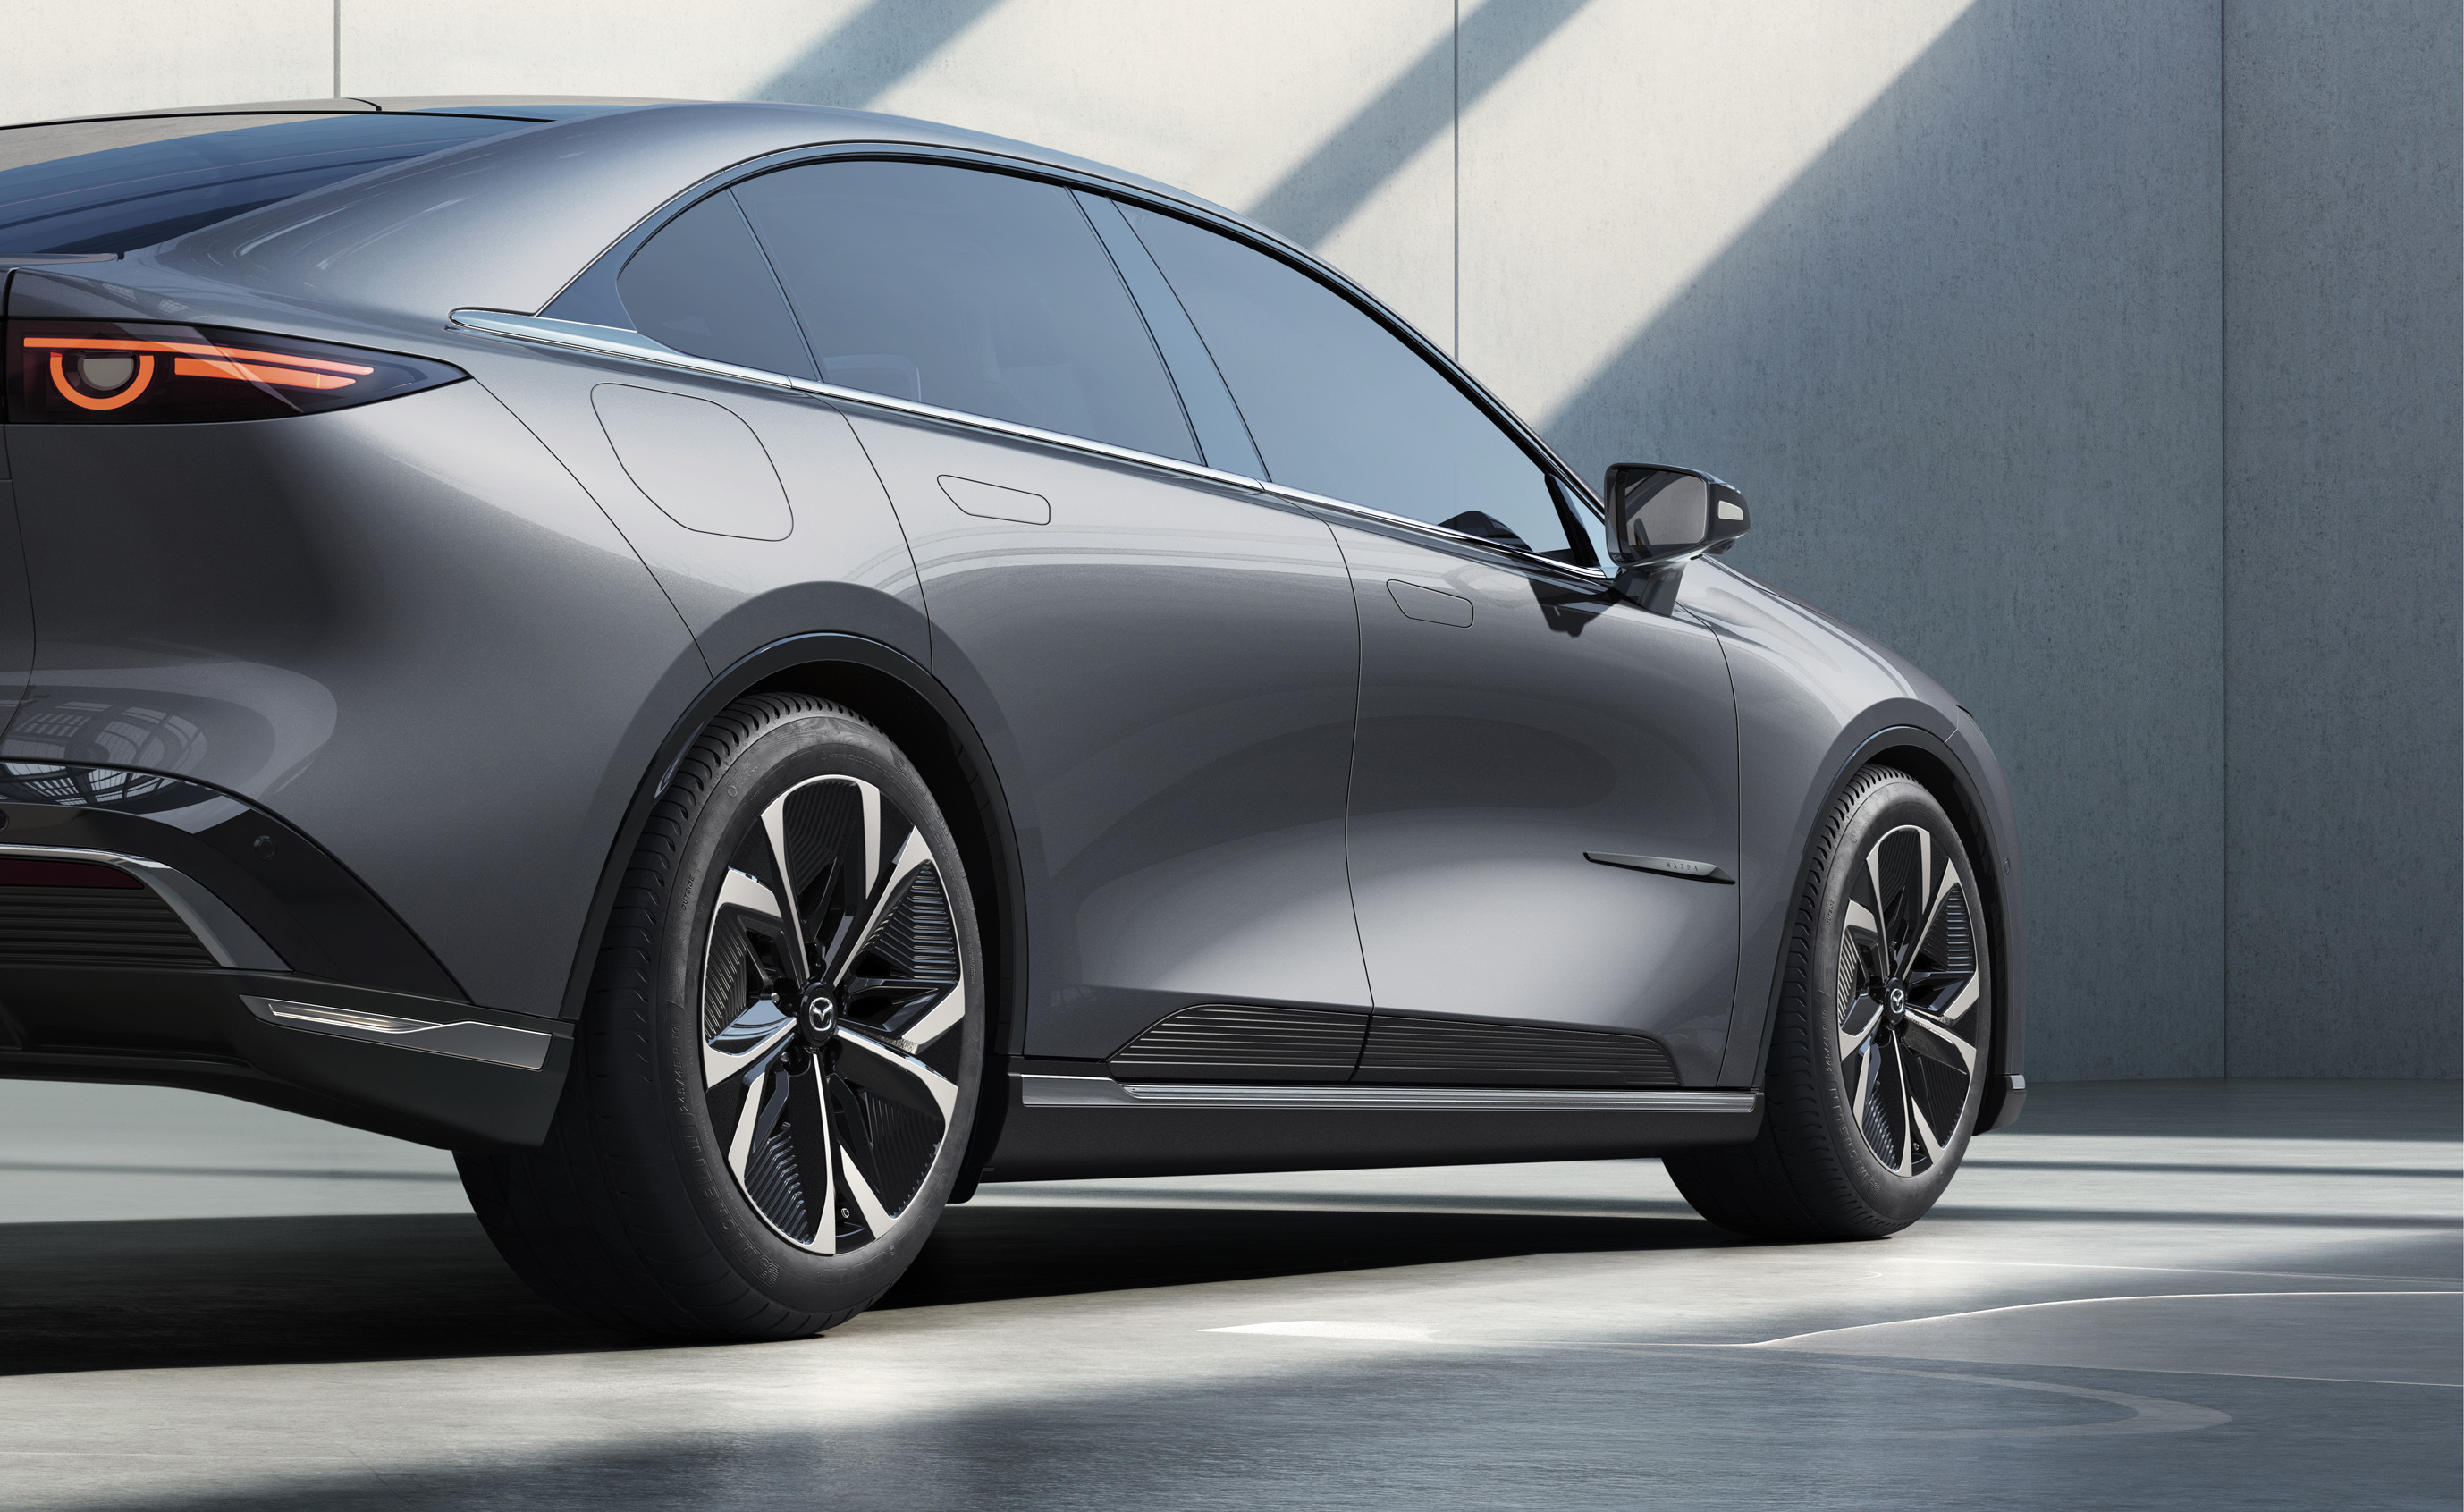 Mazda kündigt die elektrische Limousine EZ-6 und das Crossover-SUV-Konzept ARATA an